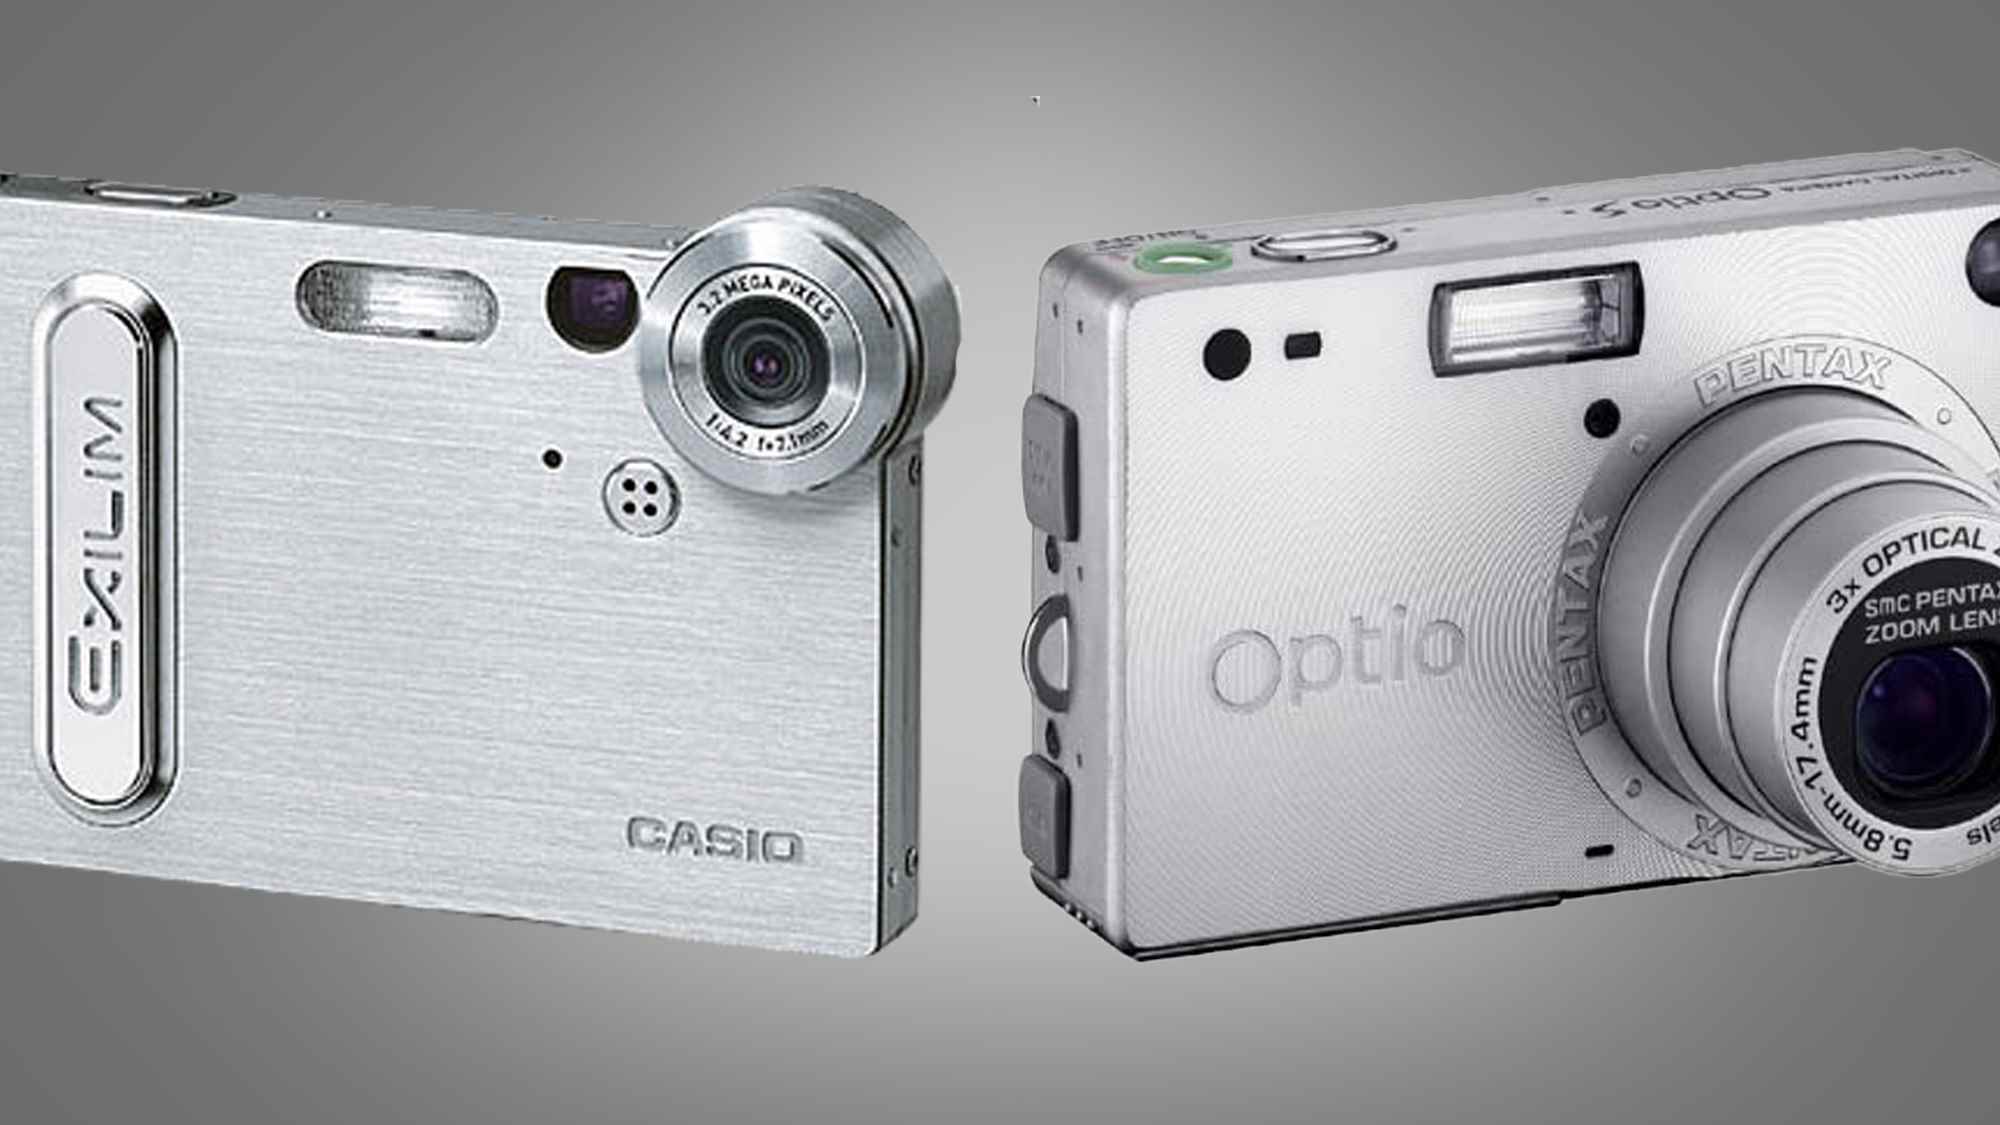 Gri bir arka plan üzerinde yan yana bir Casio ve Pentax kompakt fotoğraf makinesi